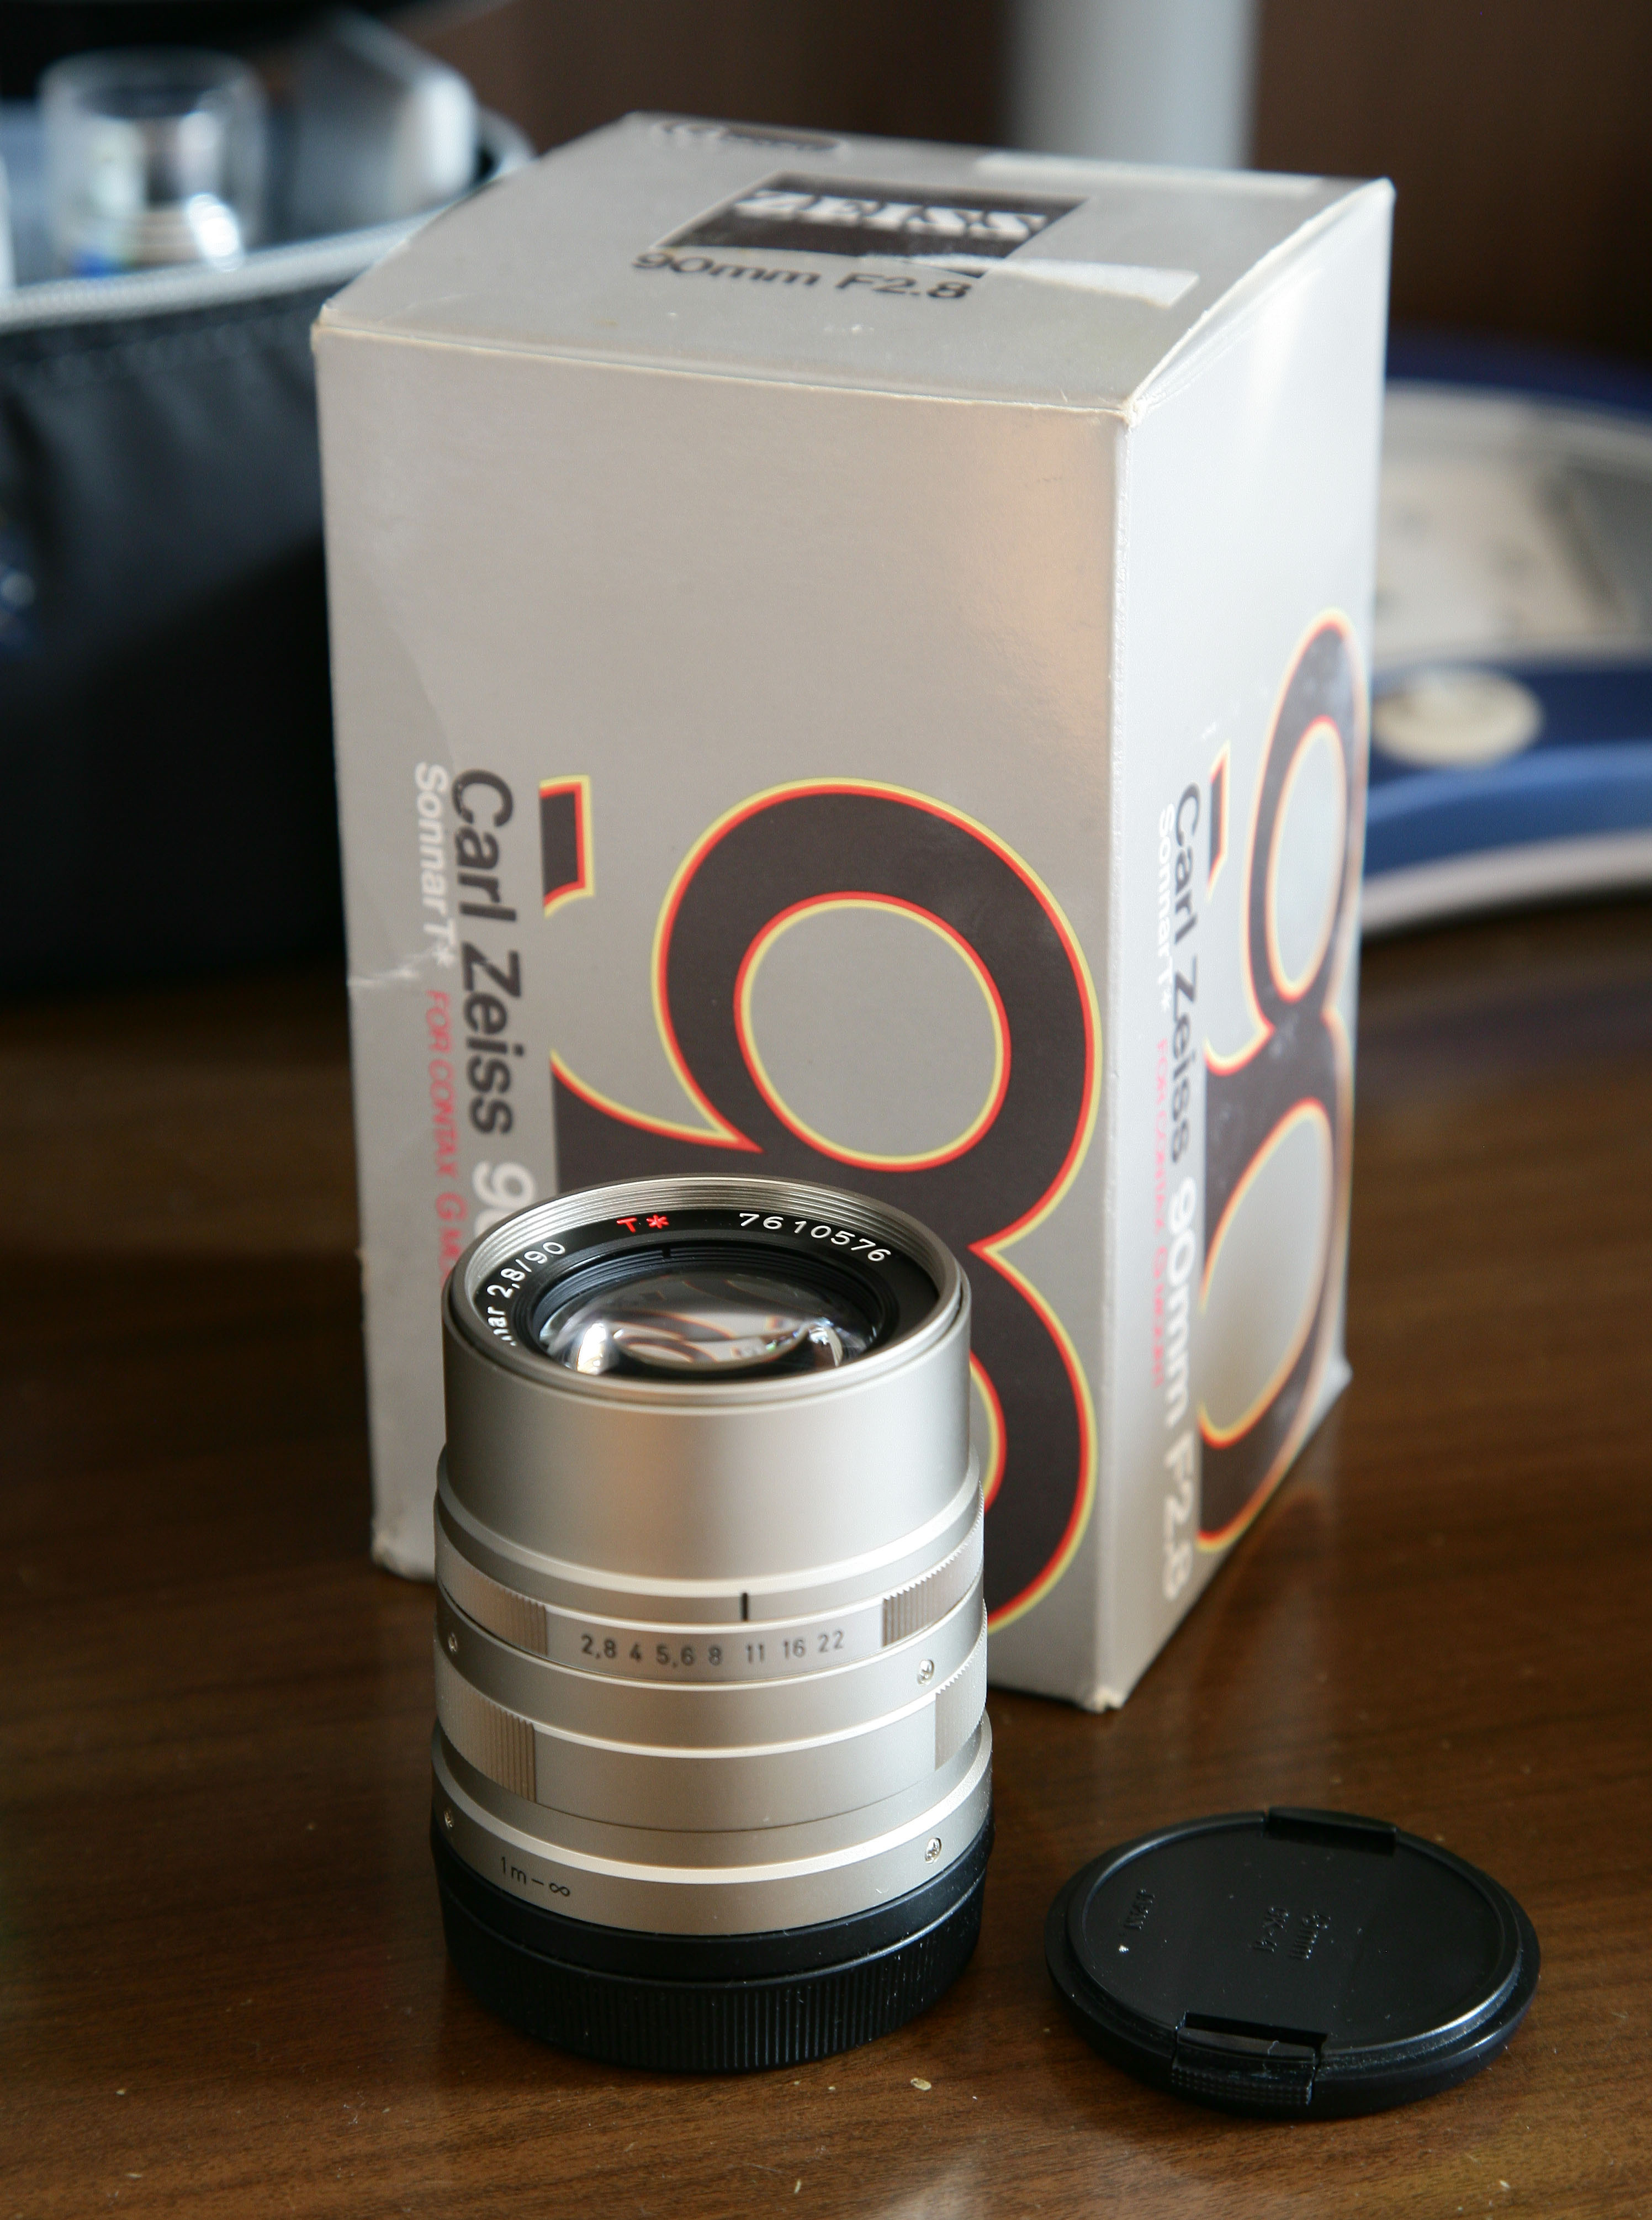 康泰时 G 镜头 Sonnar 90mm F2.8 带原厂包装盒